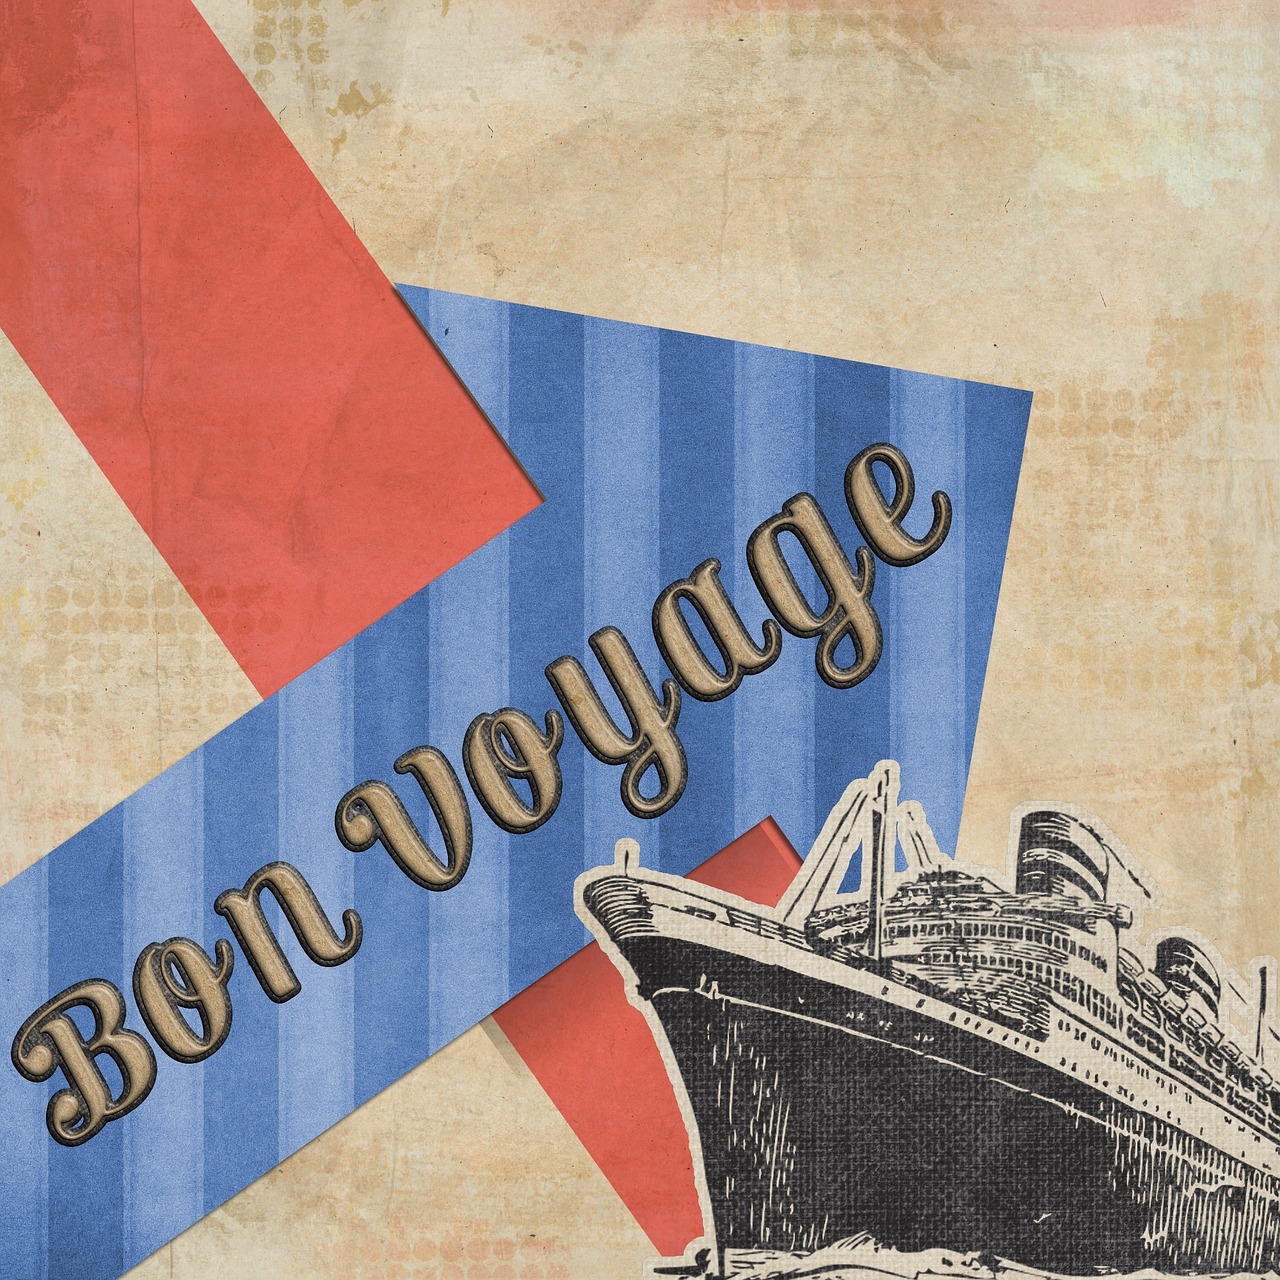 bon voyage card greeting free photo